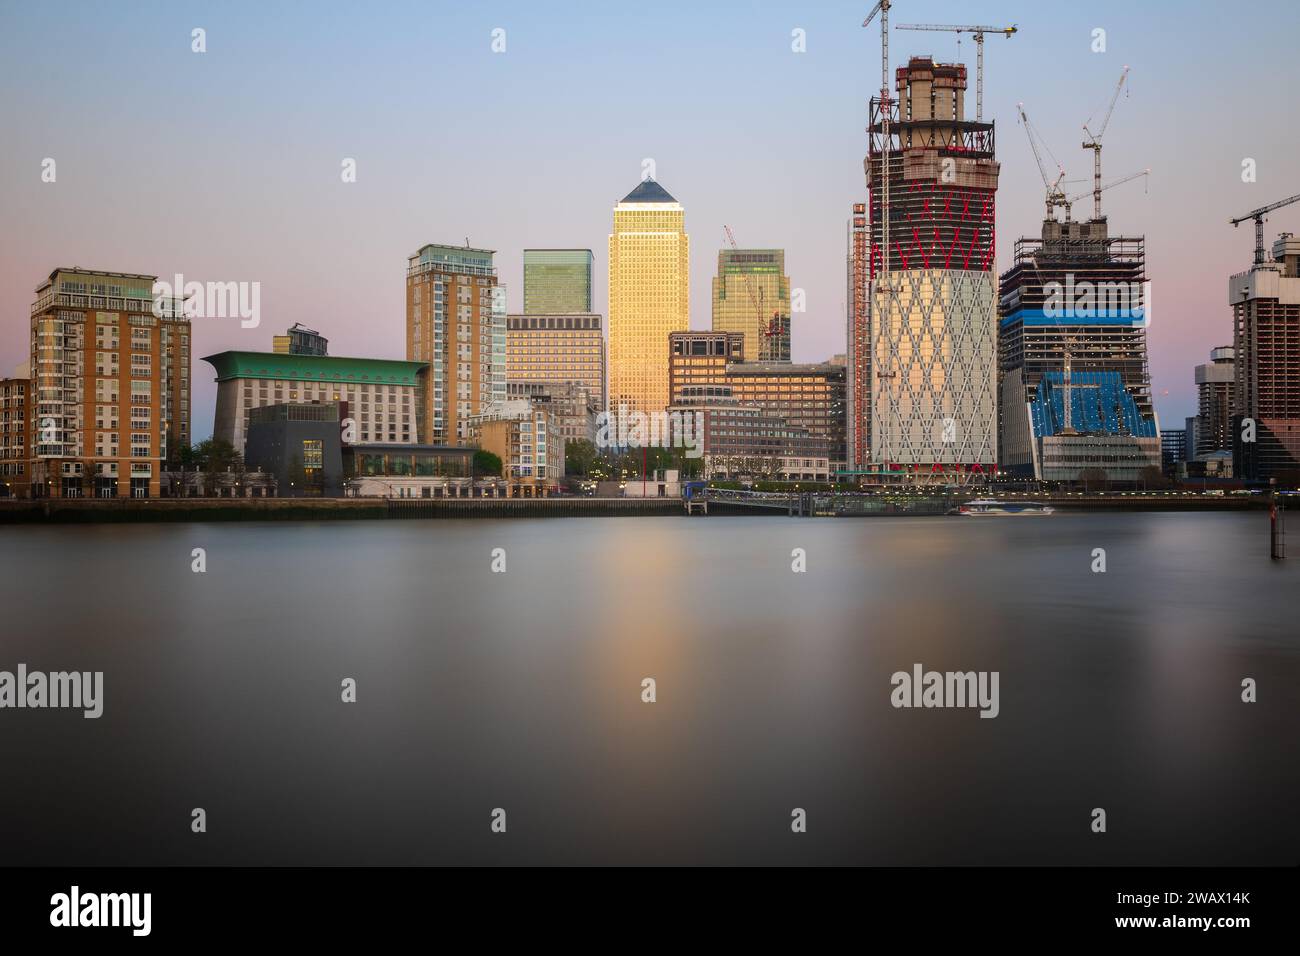 Longue exposition, Canary Wharf avec nouveau développement à Londres, Angleterre Banque D'Images